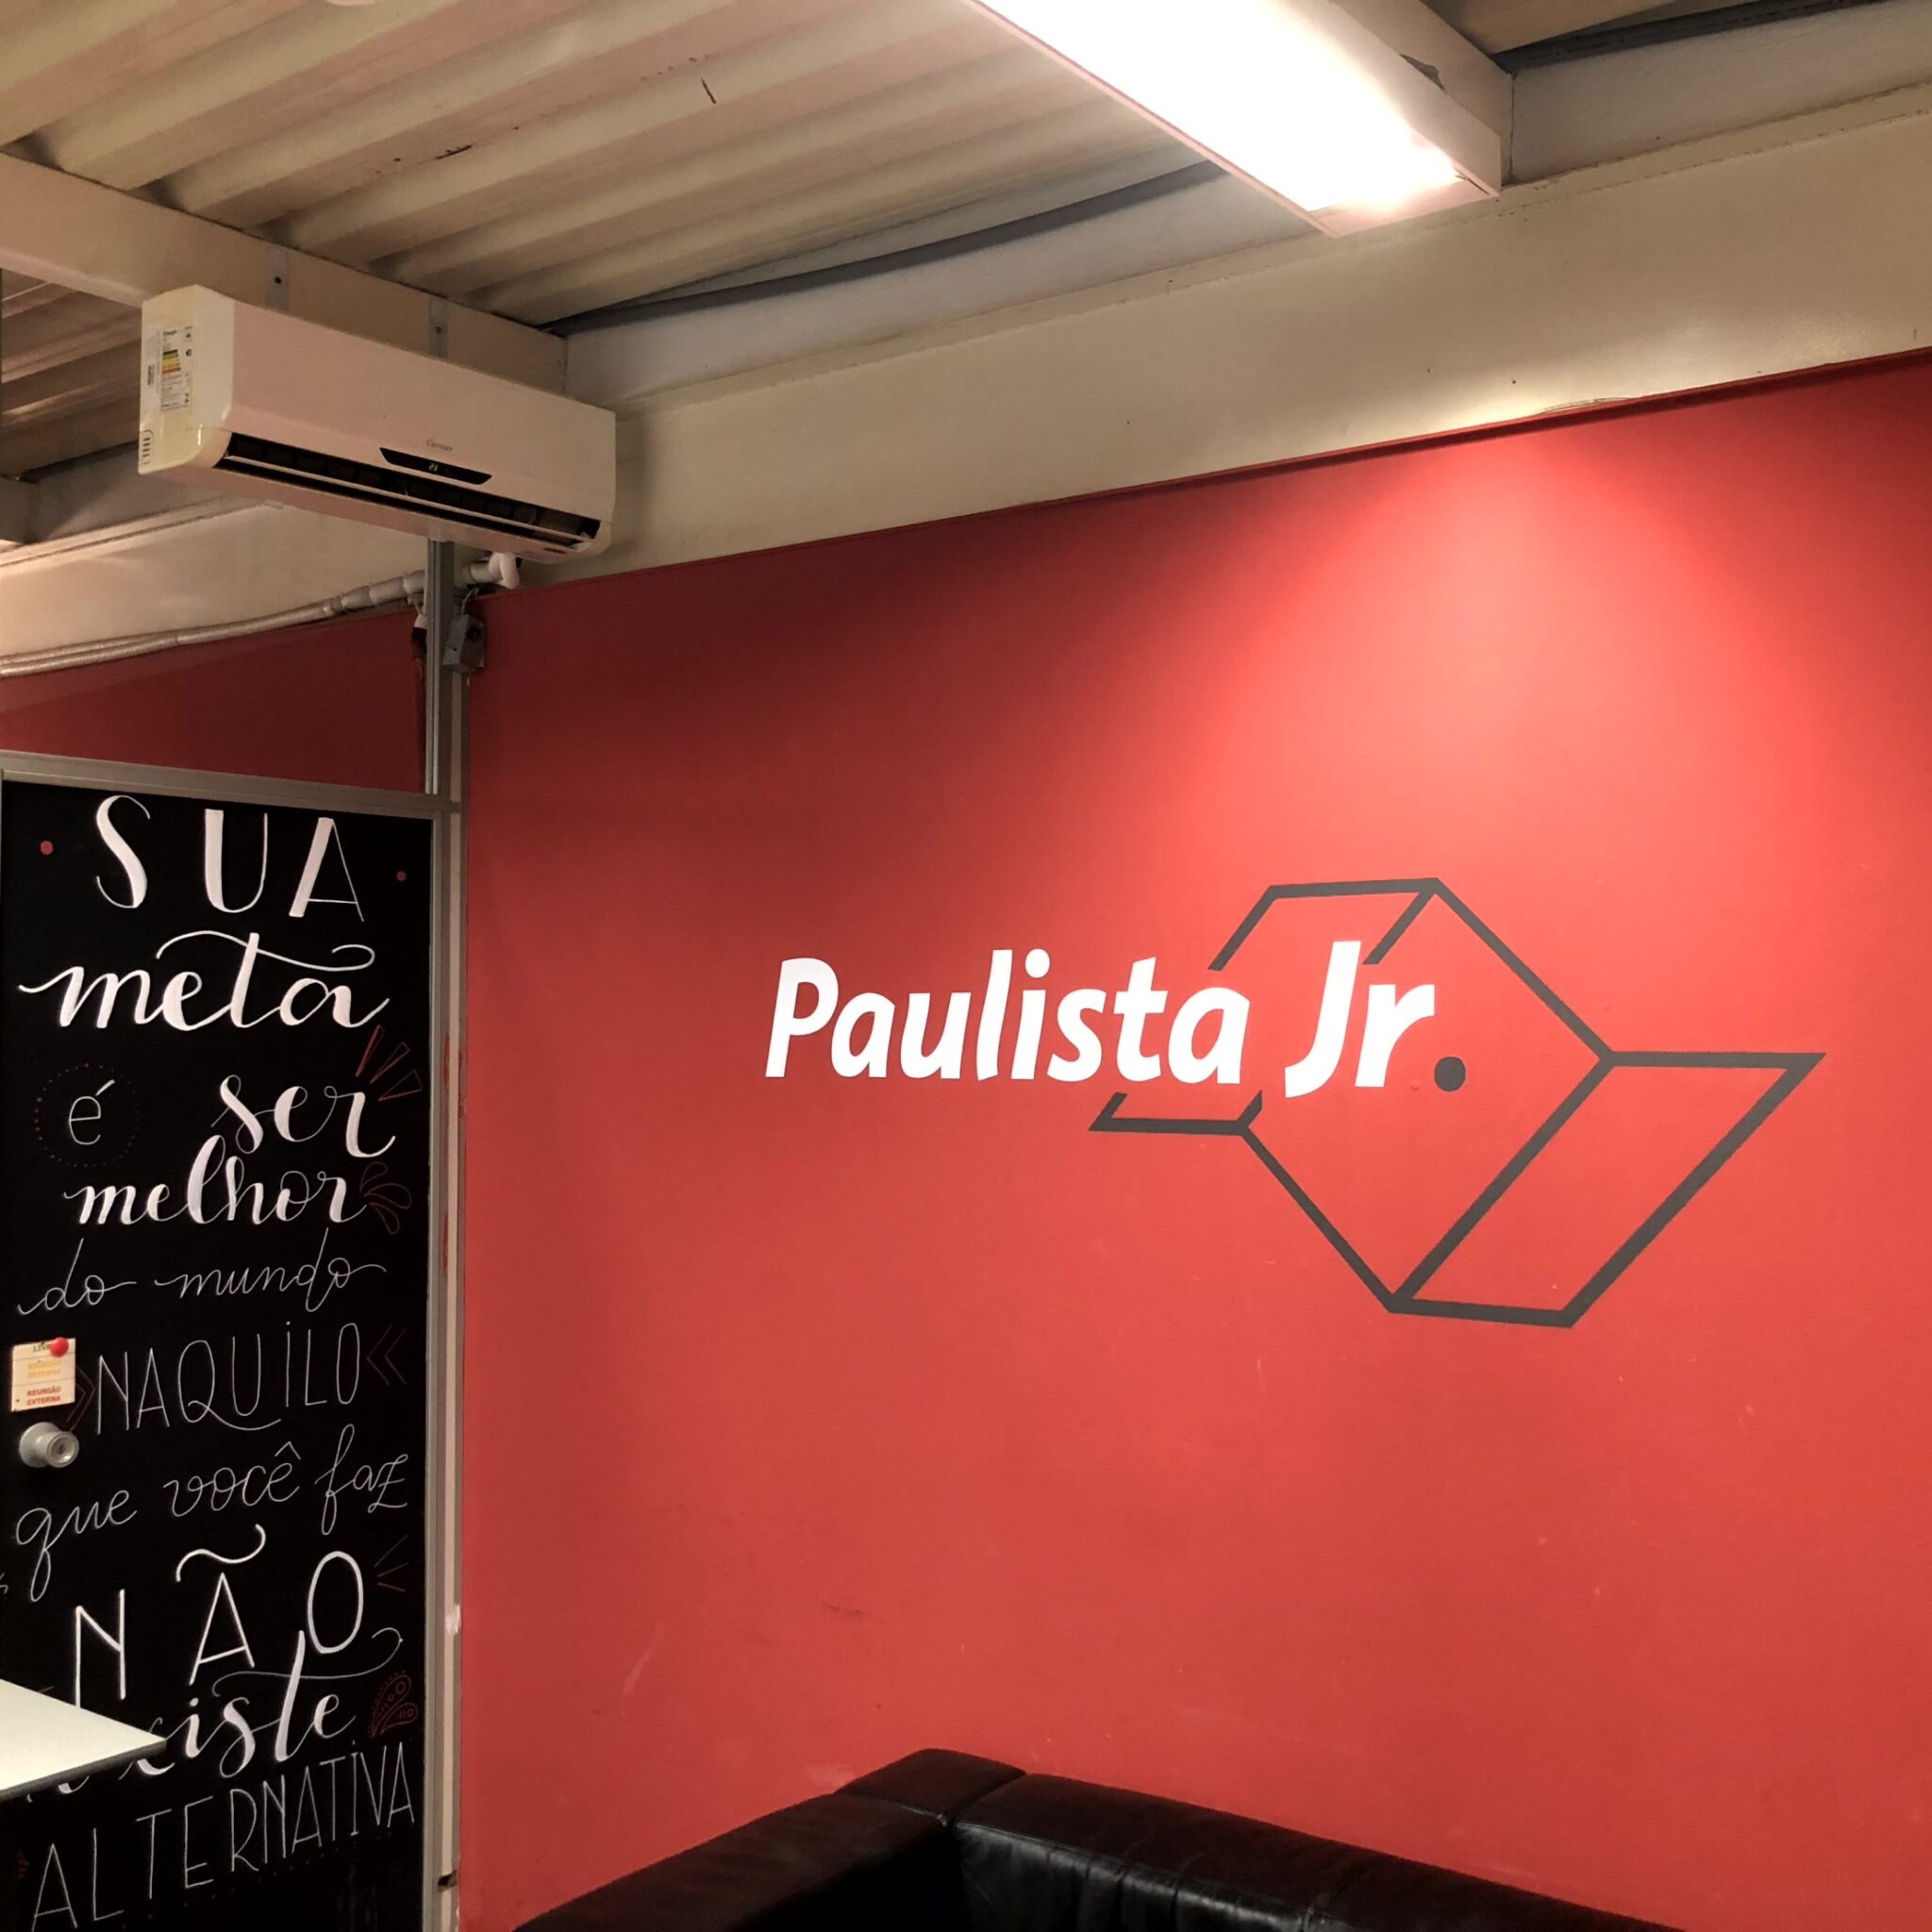 Parede vermelha com a logo da Paulista Jr, o nome da empresa escrito em branco com o simbolo do estado de São Paulo